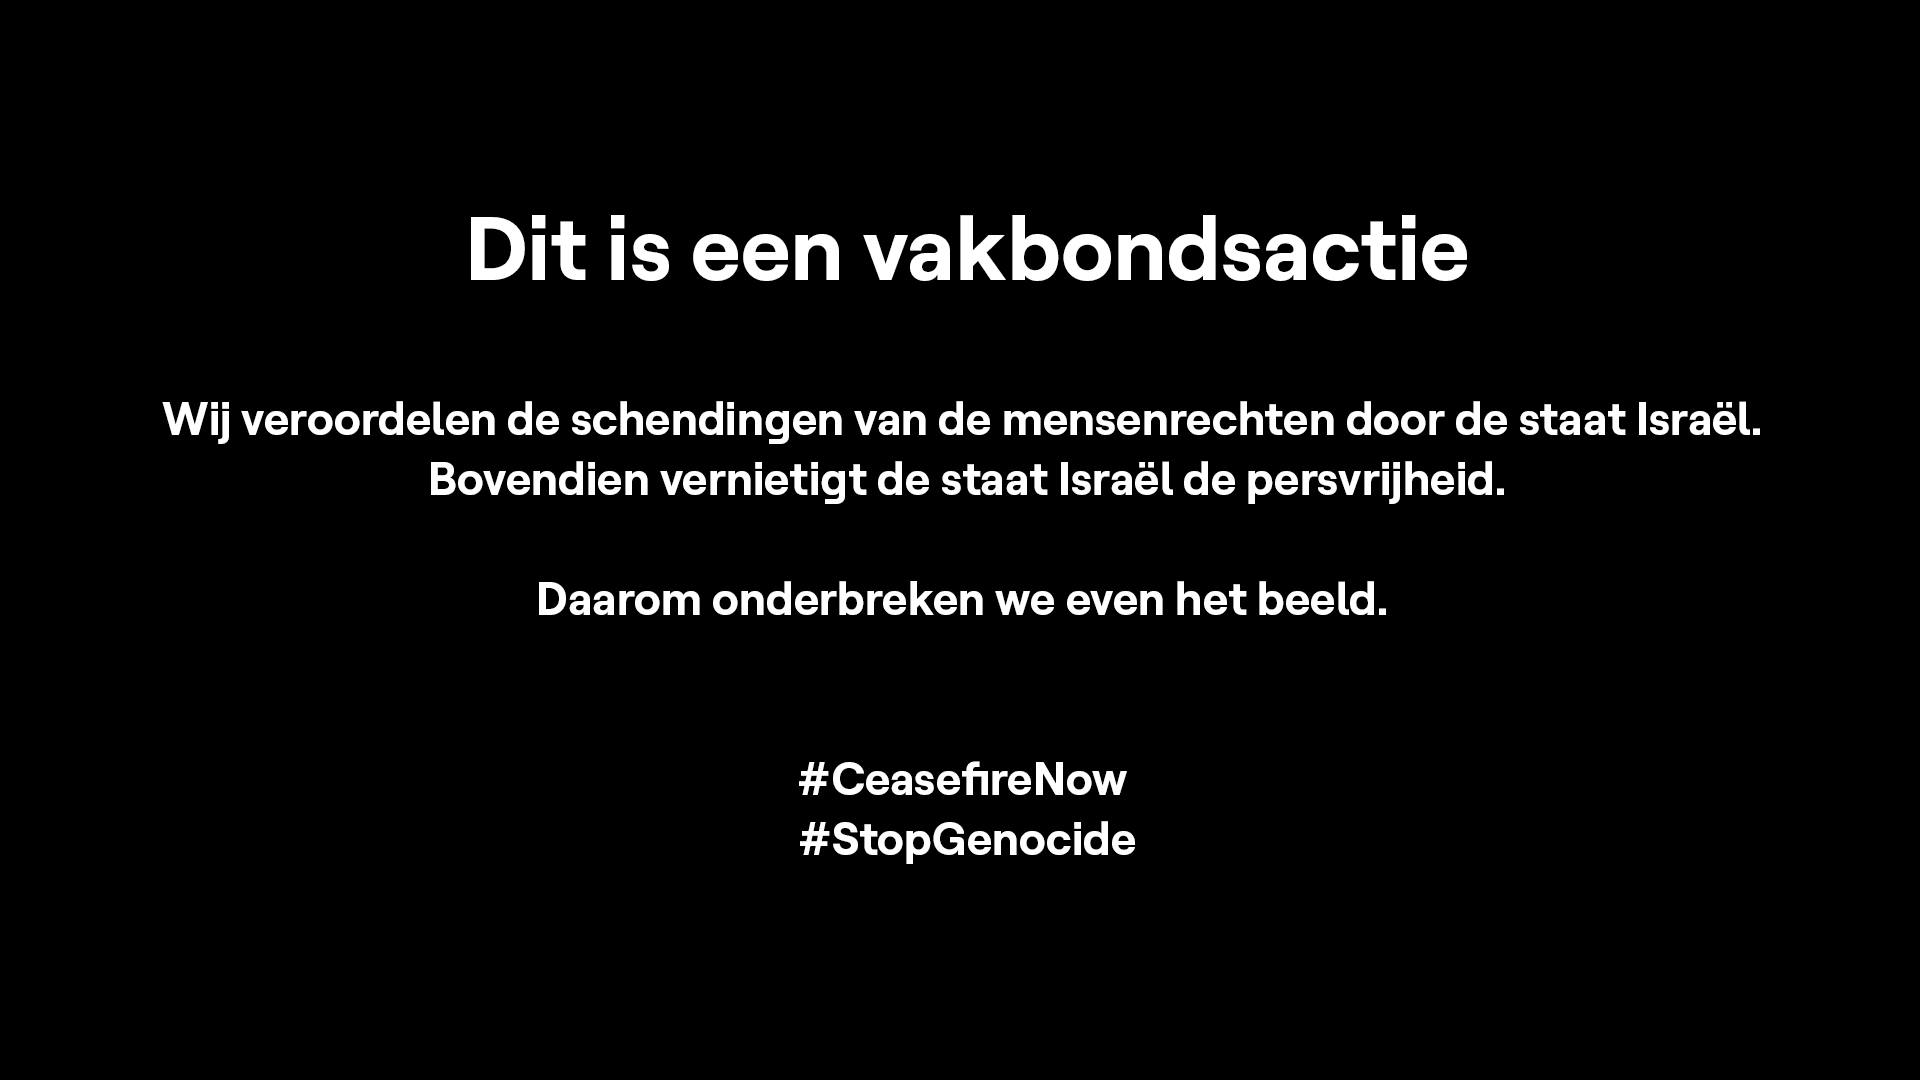 Un message de soutien à la Palestine est apparu jeudi à la télévision belge en pleine demi-finale de l'Eurovision. ACOD-VRT